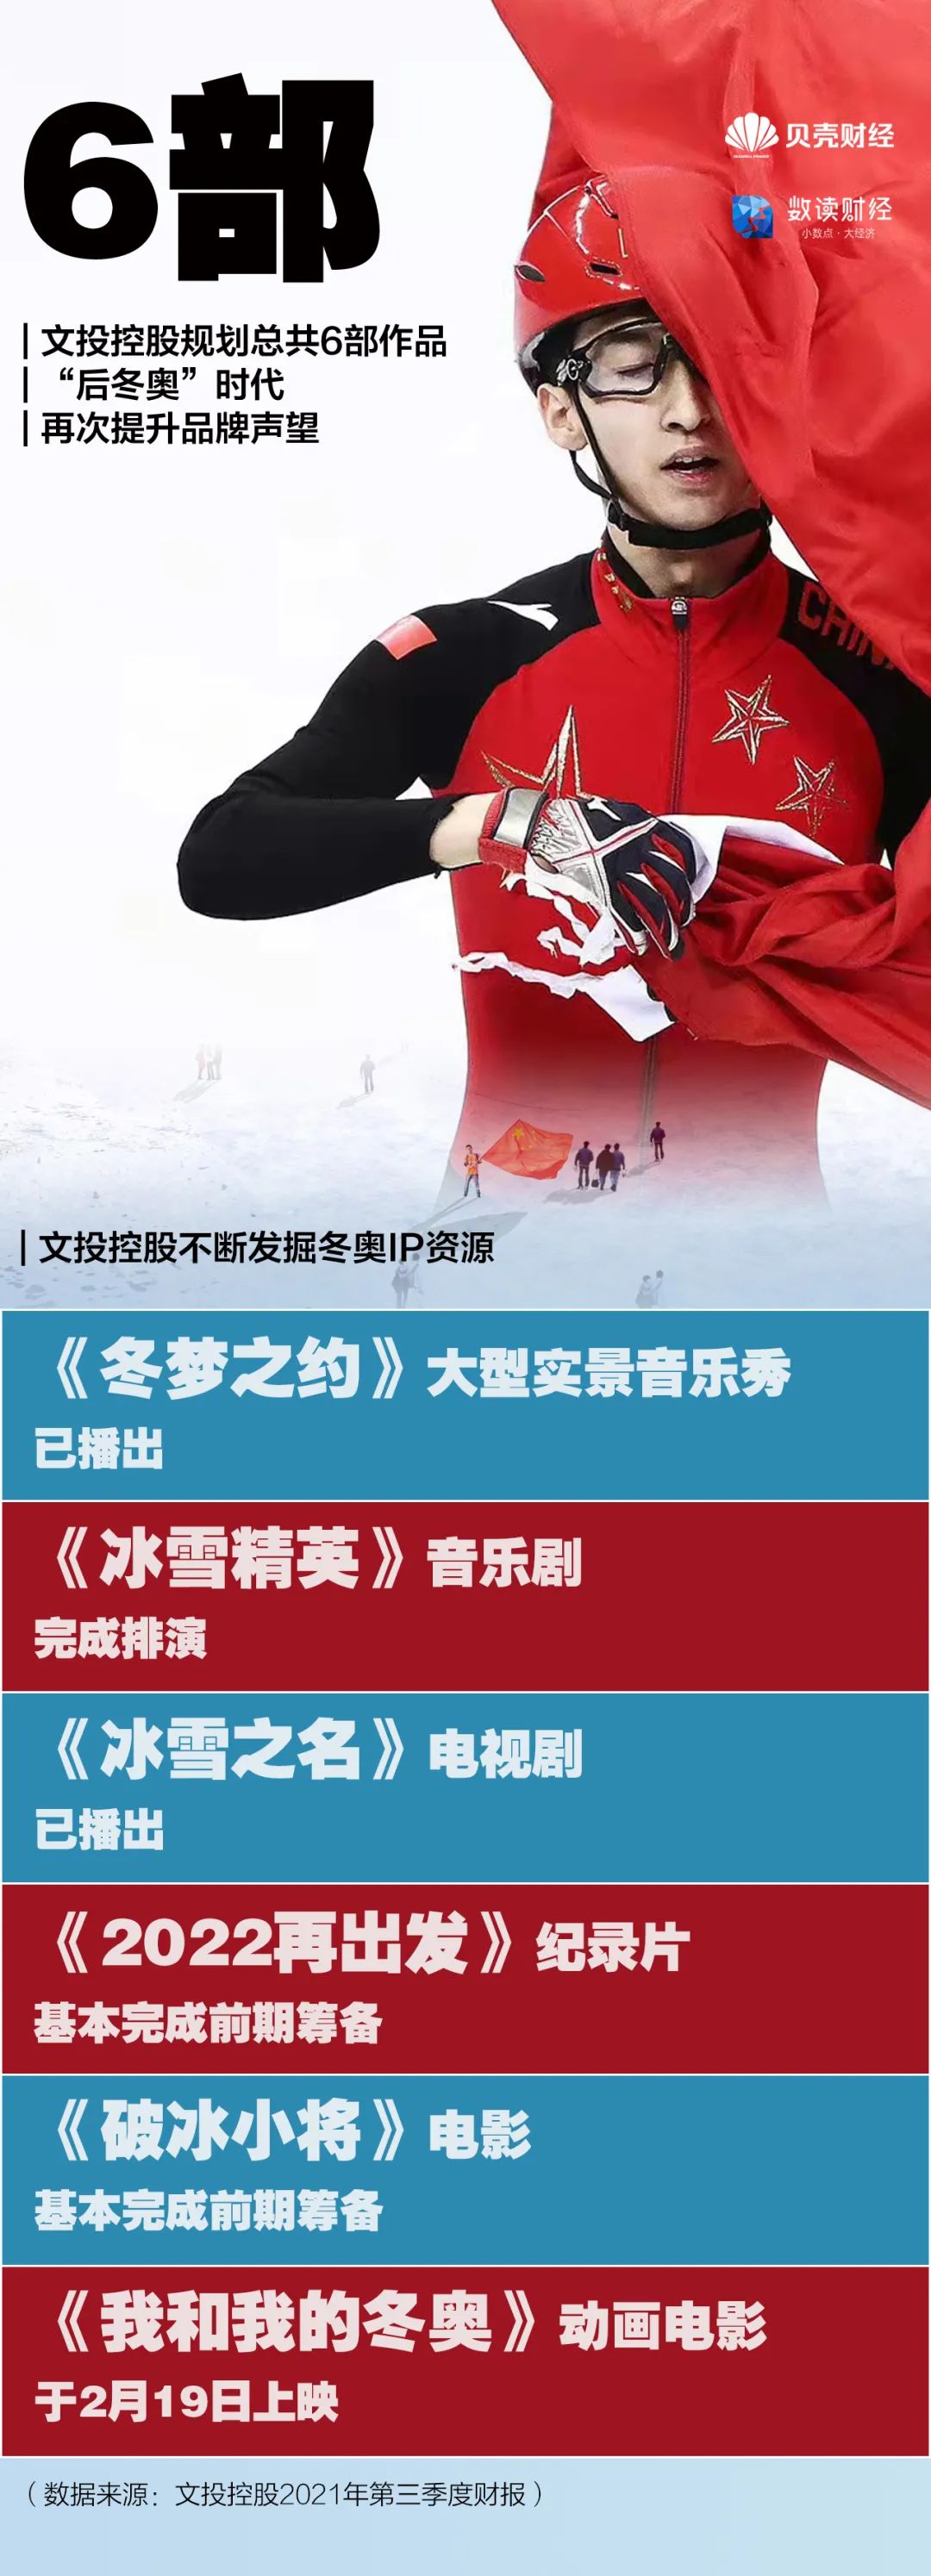 北京冬奥会全球收视率预计超20亿插图11